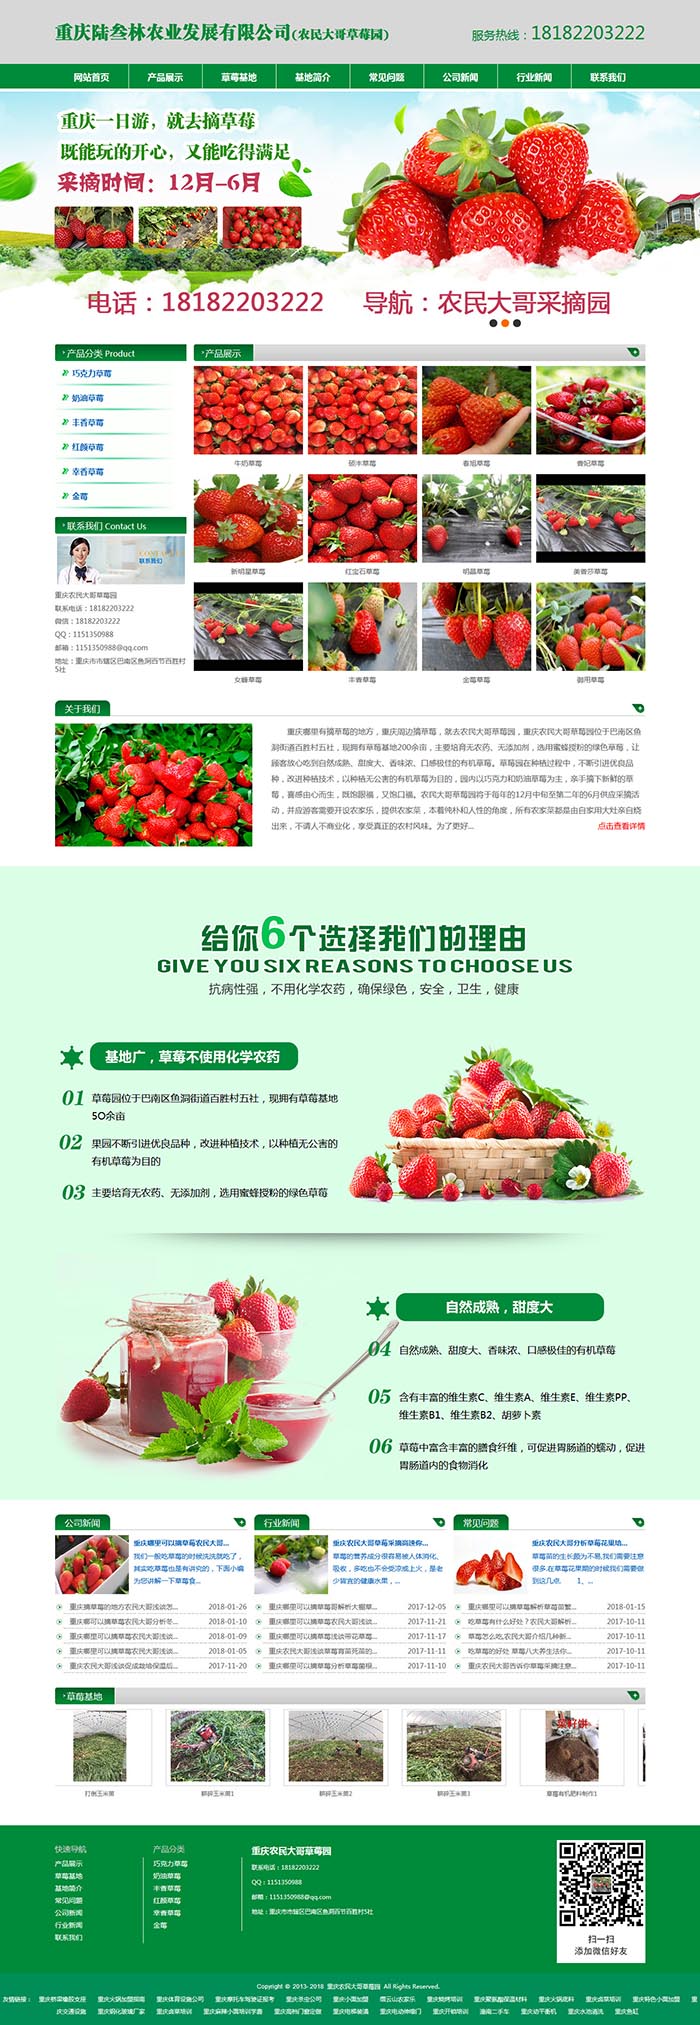 重庆农民大哥草莓网站建设案例